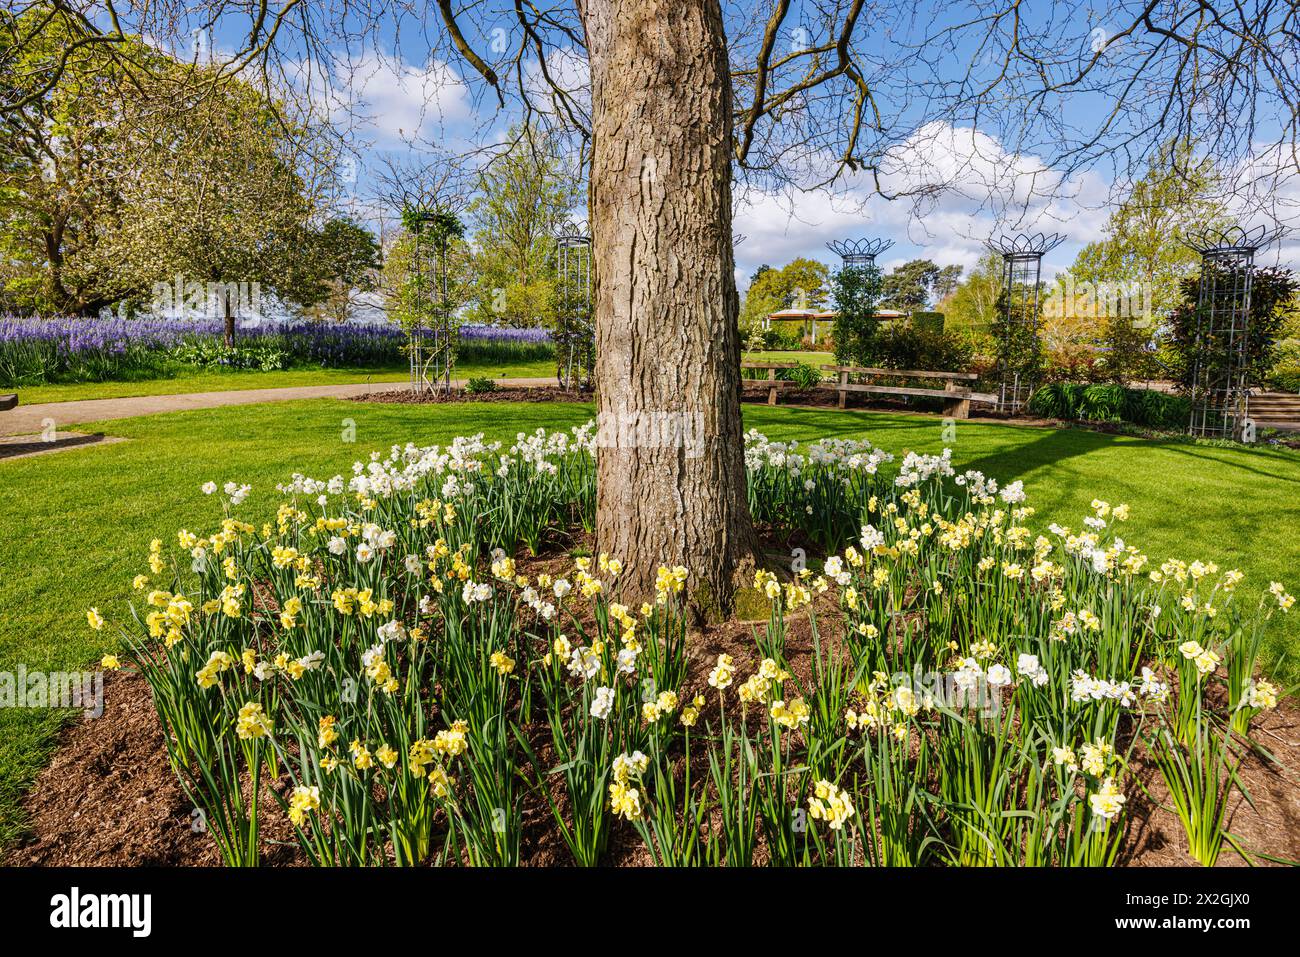 Narcissus „Yellow Cheerfulness“ und weiße „Cheerfulness“ blühen im Frühjahr rund um einen Baum, RHS Garden, Wisley, Surrey, Südosten Englands Stockfoto